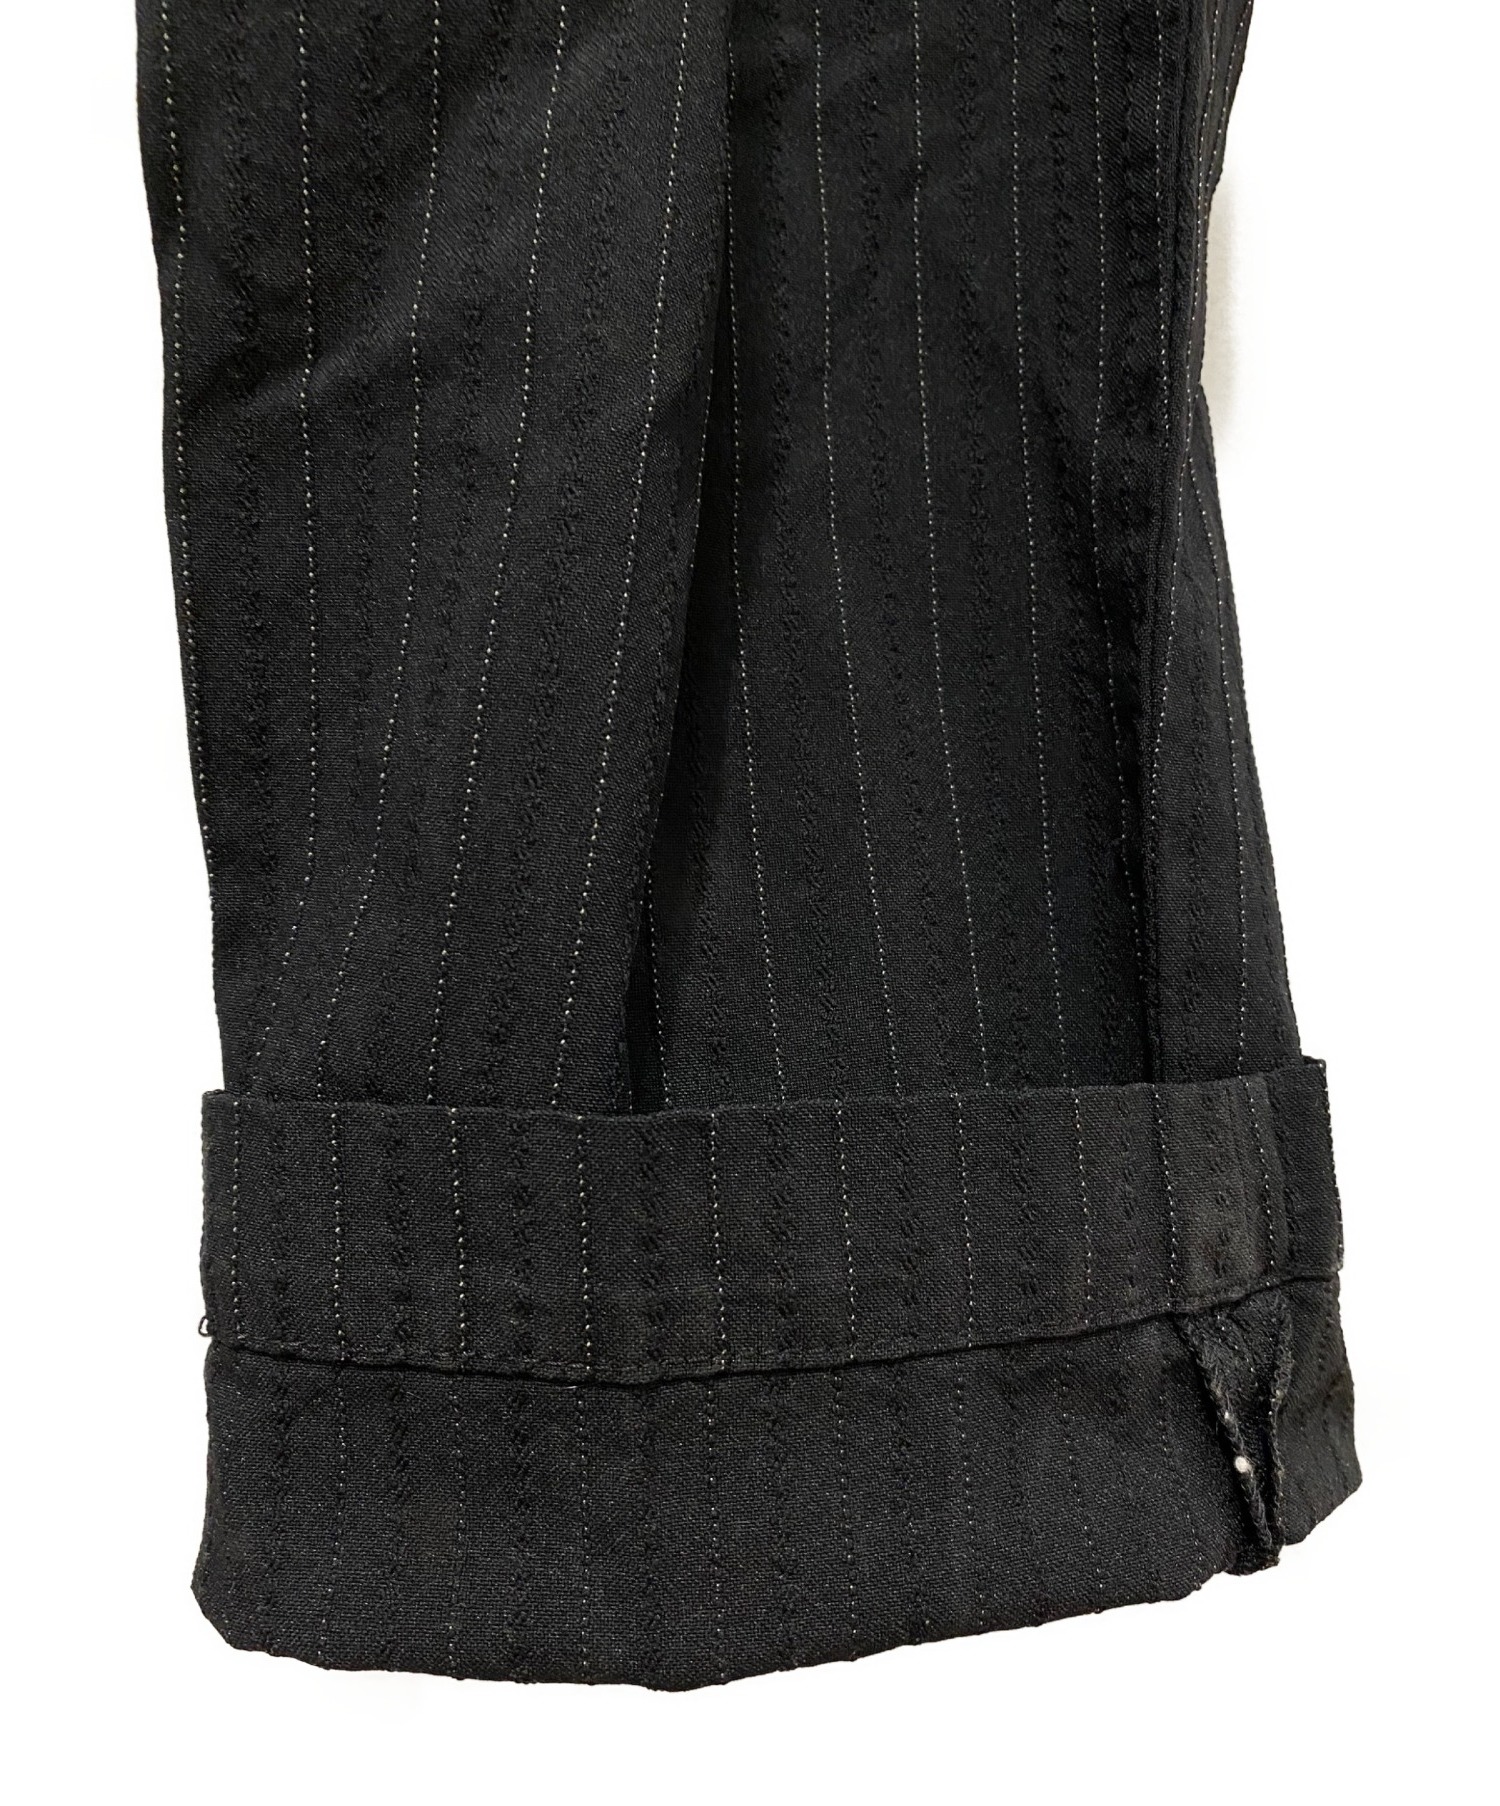 COMME des GARCONS HOMME DEUX (コムデギャルソン オム ドゥ) ポリ縮後染加工セットアップスーツ ブラック  サイズ:L(ジャケット)/XL(パンツ)